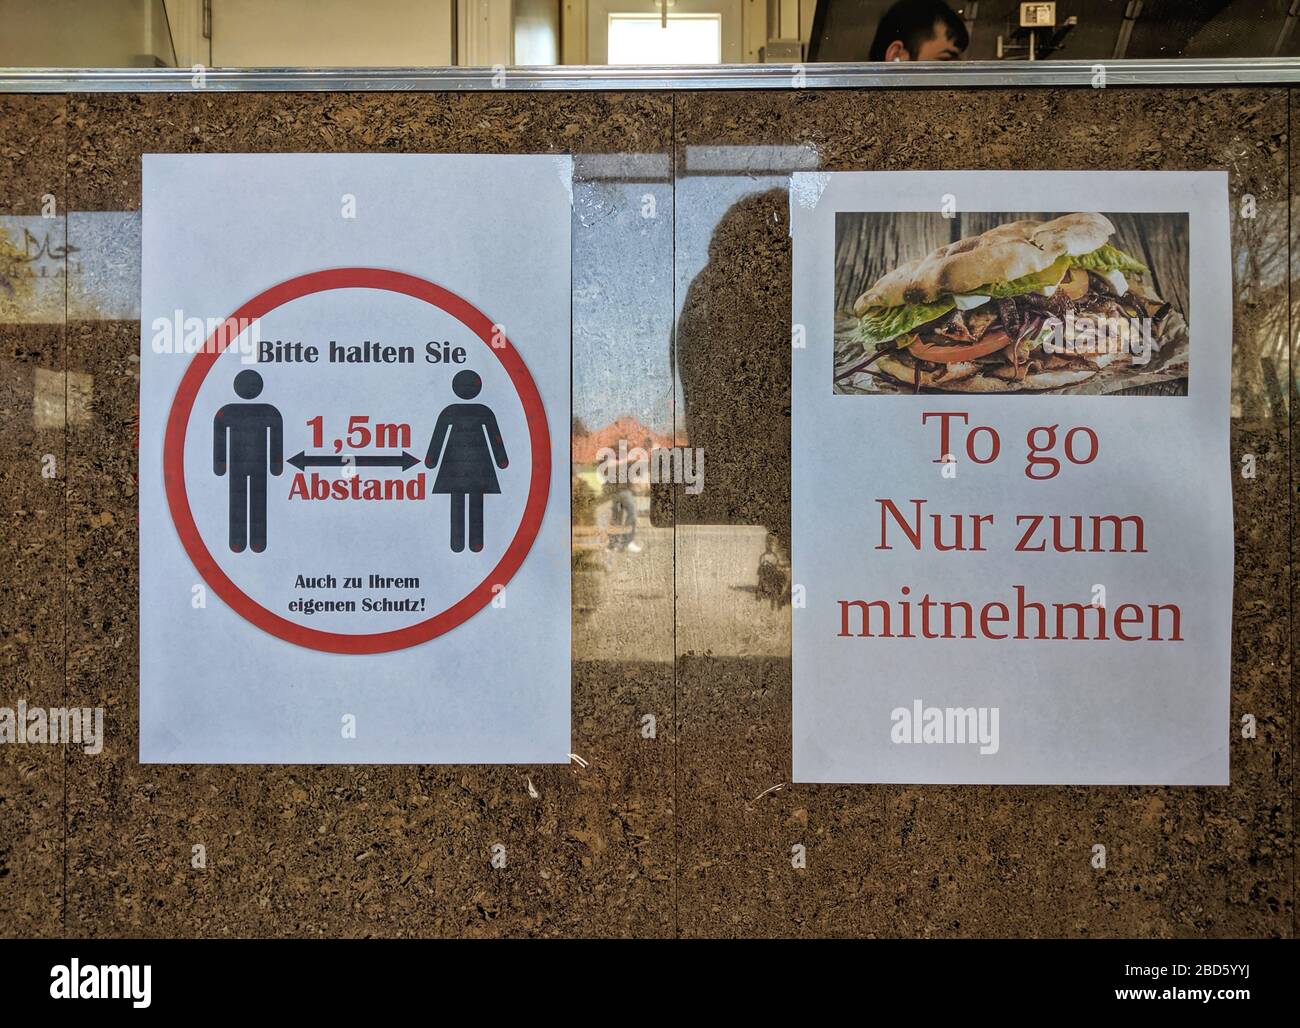 München, Deutschland. April 2020. Ein Schild in einem Doener Kebab-Restaurant in München, Deutschland, wo 1,5 m Abstände eingehalten werden und Bestellungen nur ausgeführt werden sollen. Kredit: ZUMA Press, Inc./Alamy Live News Stockfoto